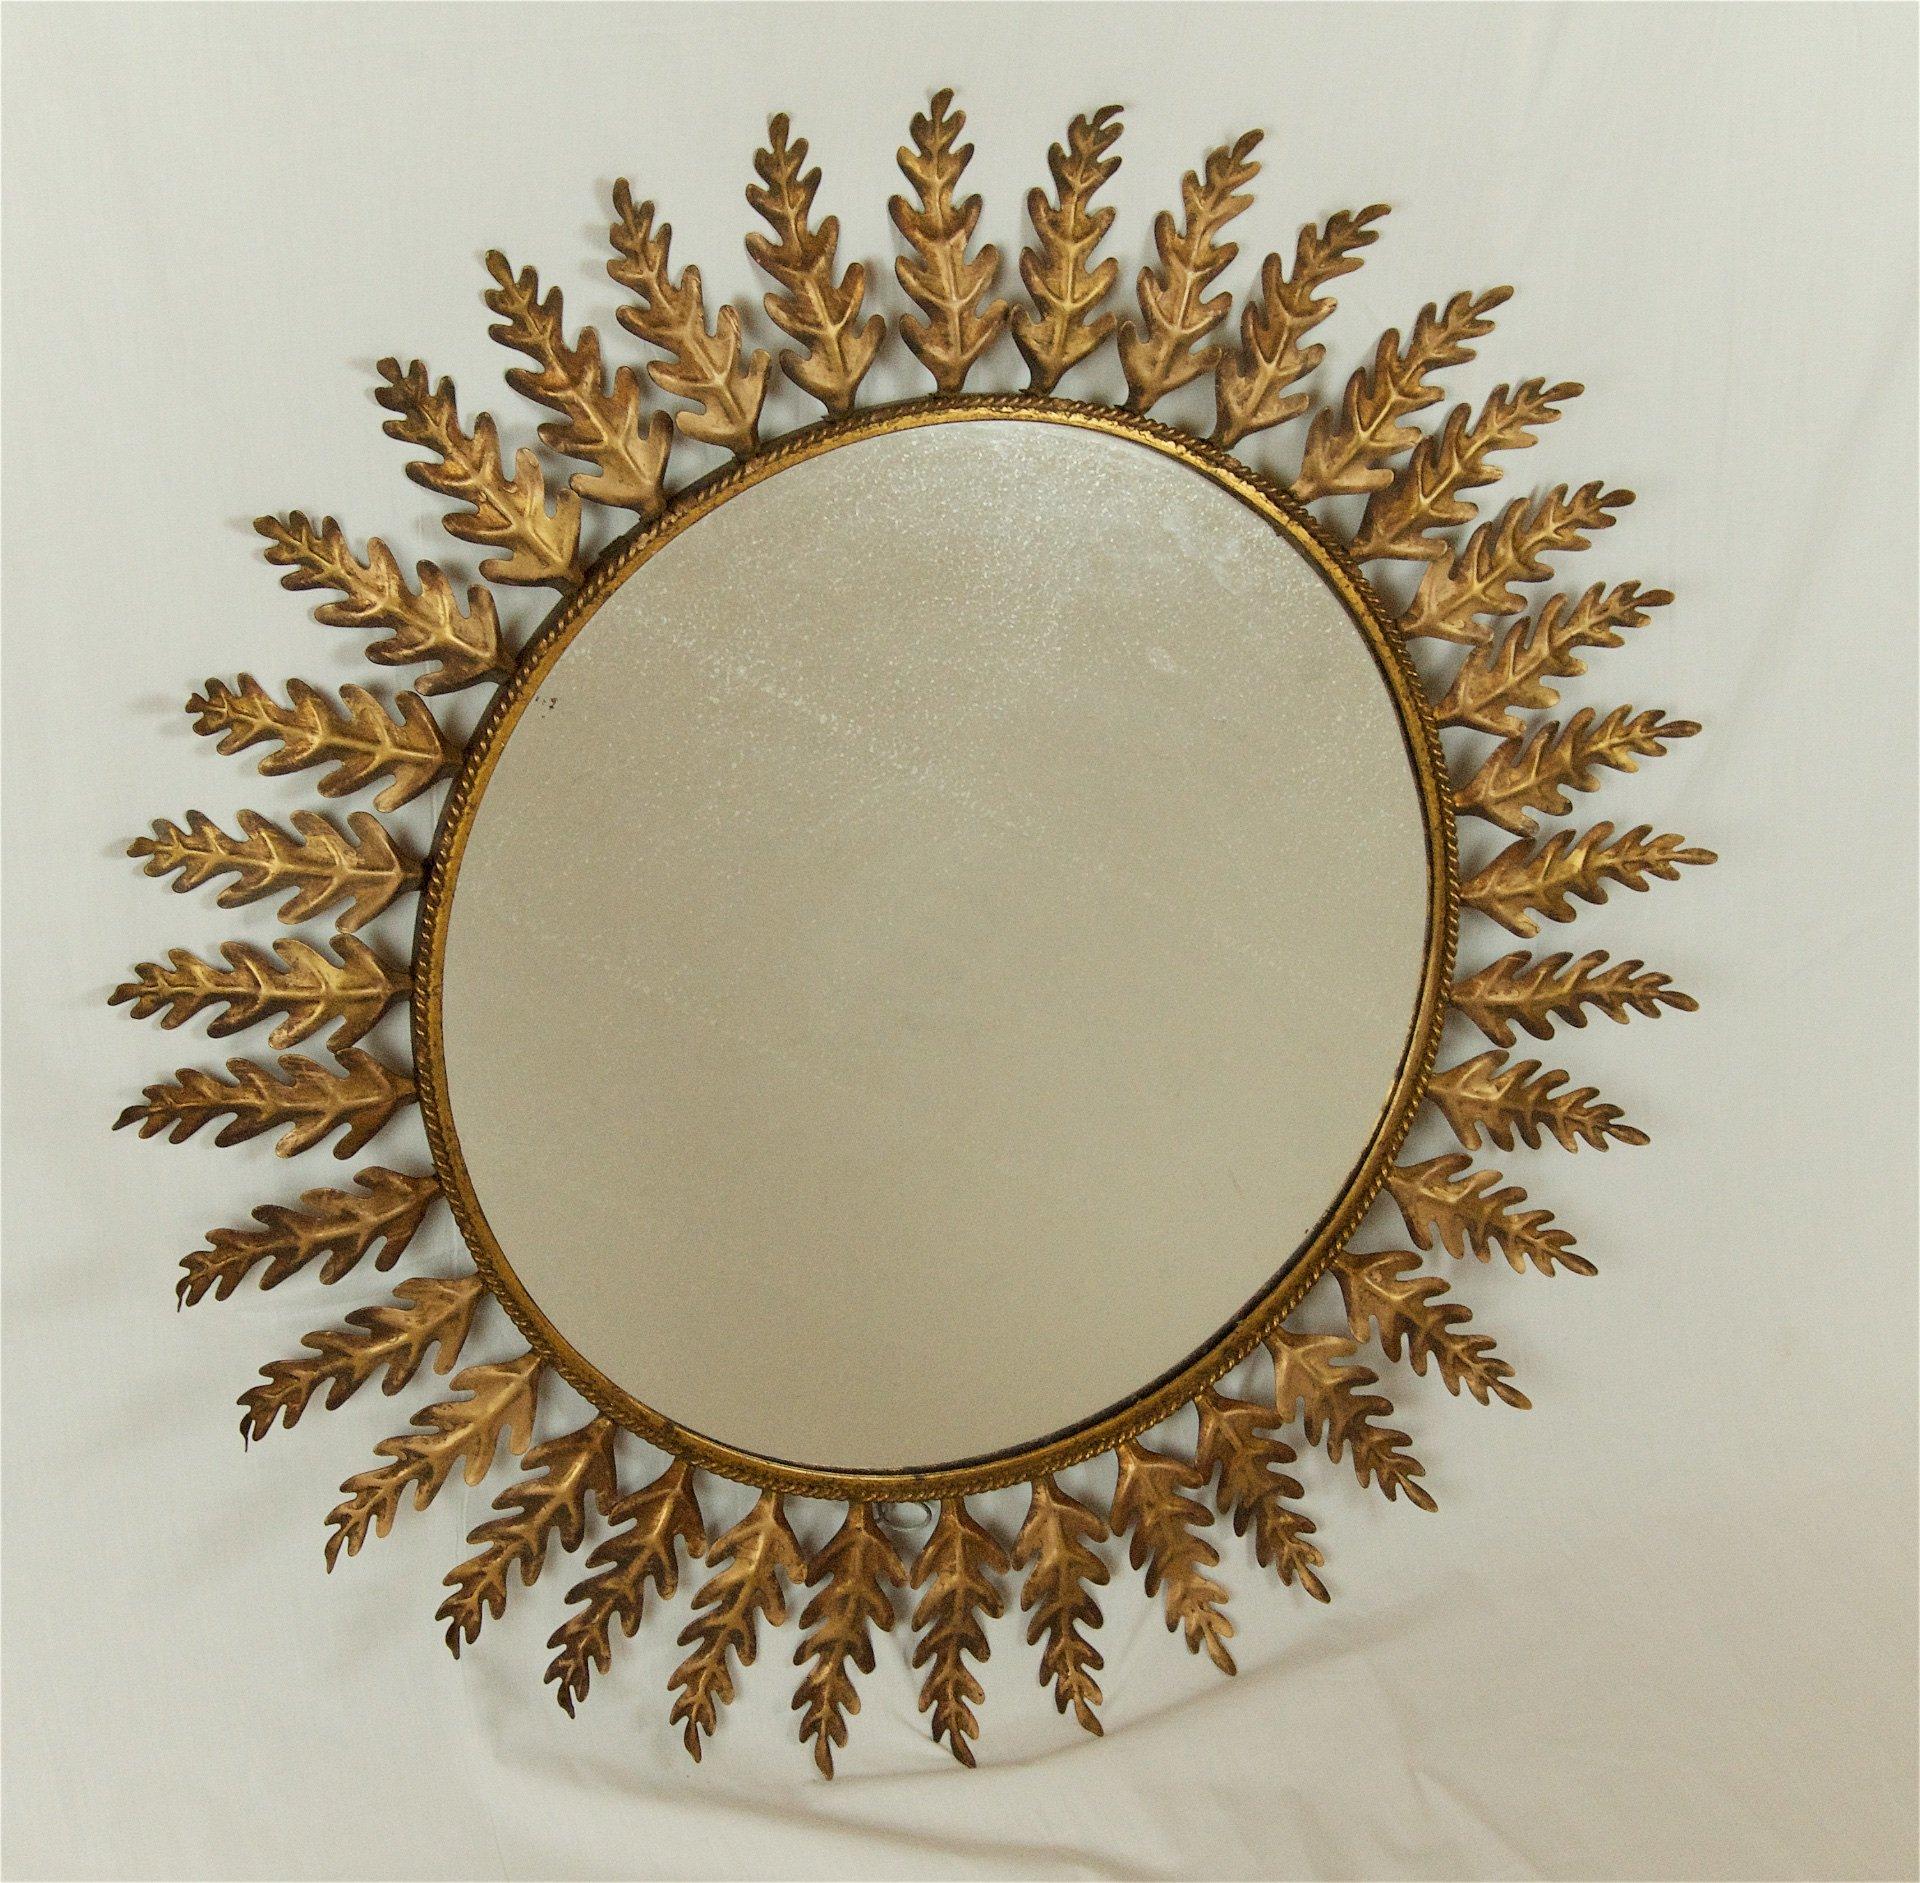 20th Century Peruvian Gilt Metal Sunburst Mirror with Leaf Pattern 1